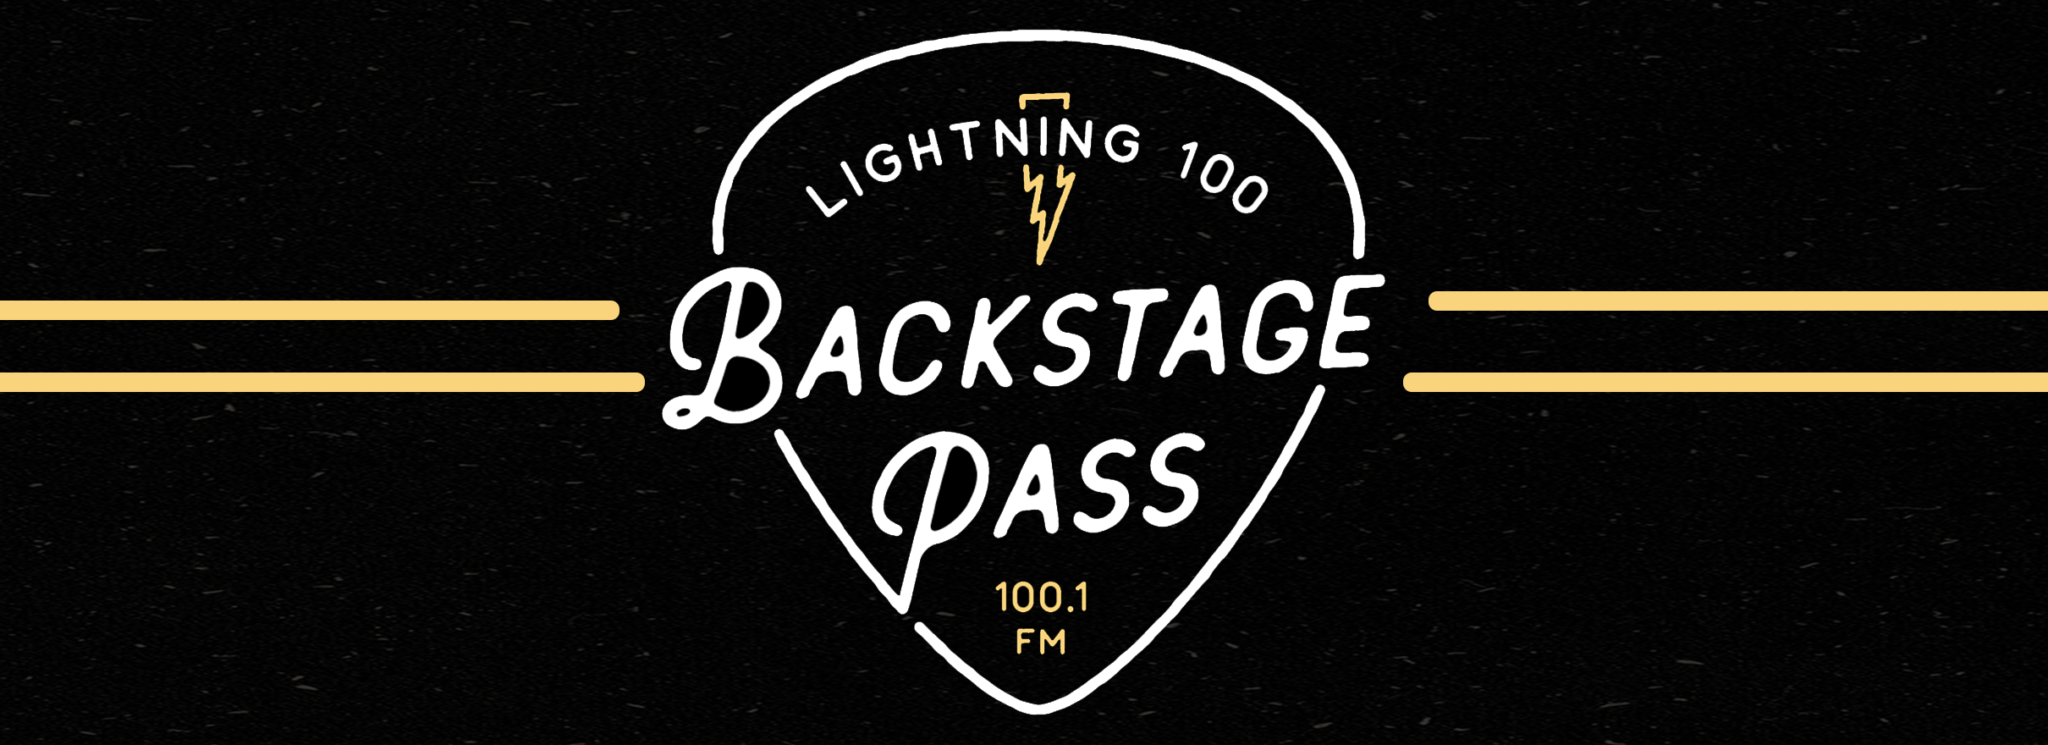 Backstage Pass Lightning 100